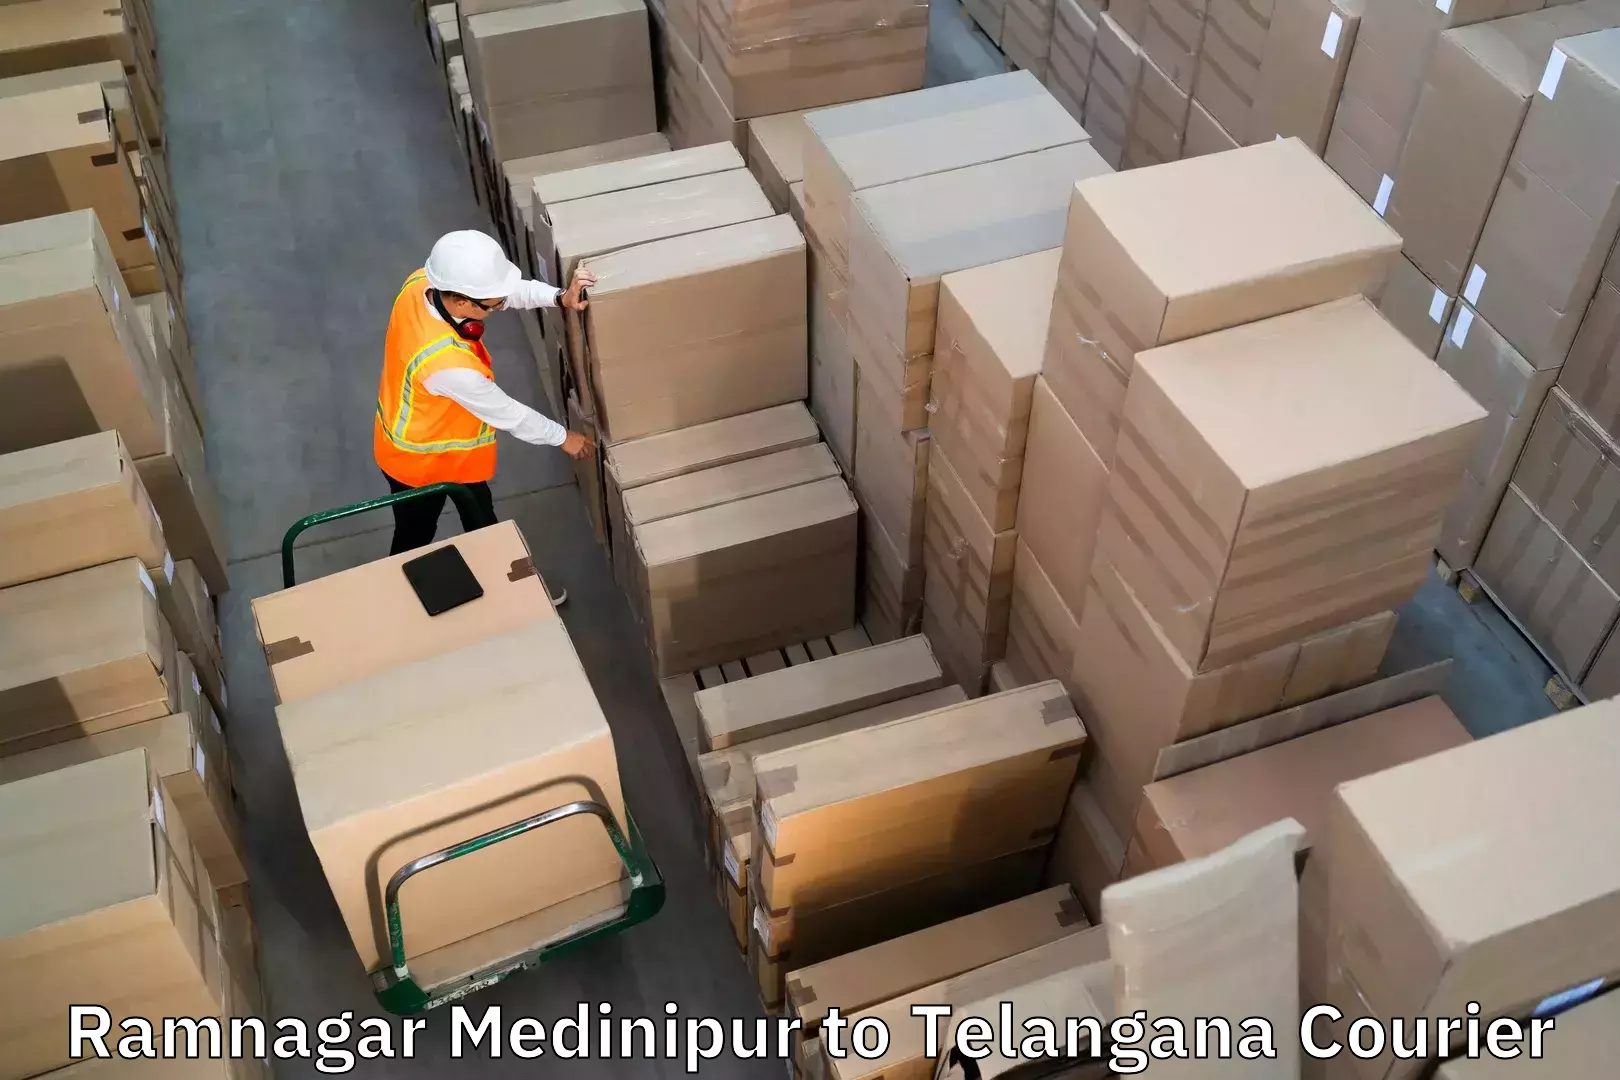 Baggage transport scheduler Ramnagar Medinipur to Netrang